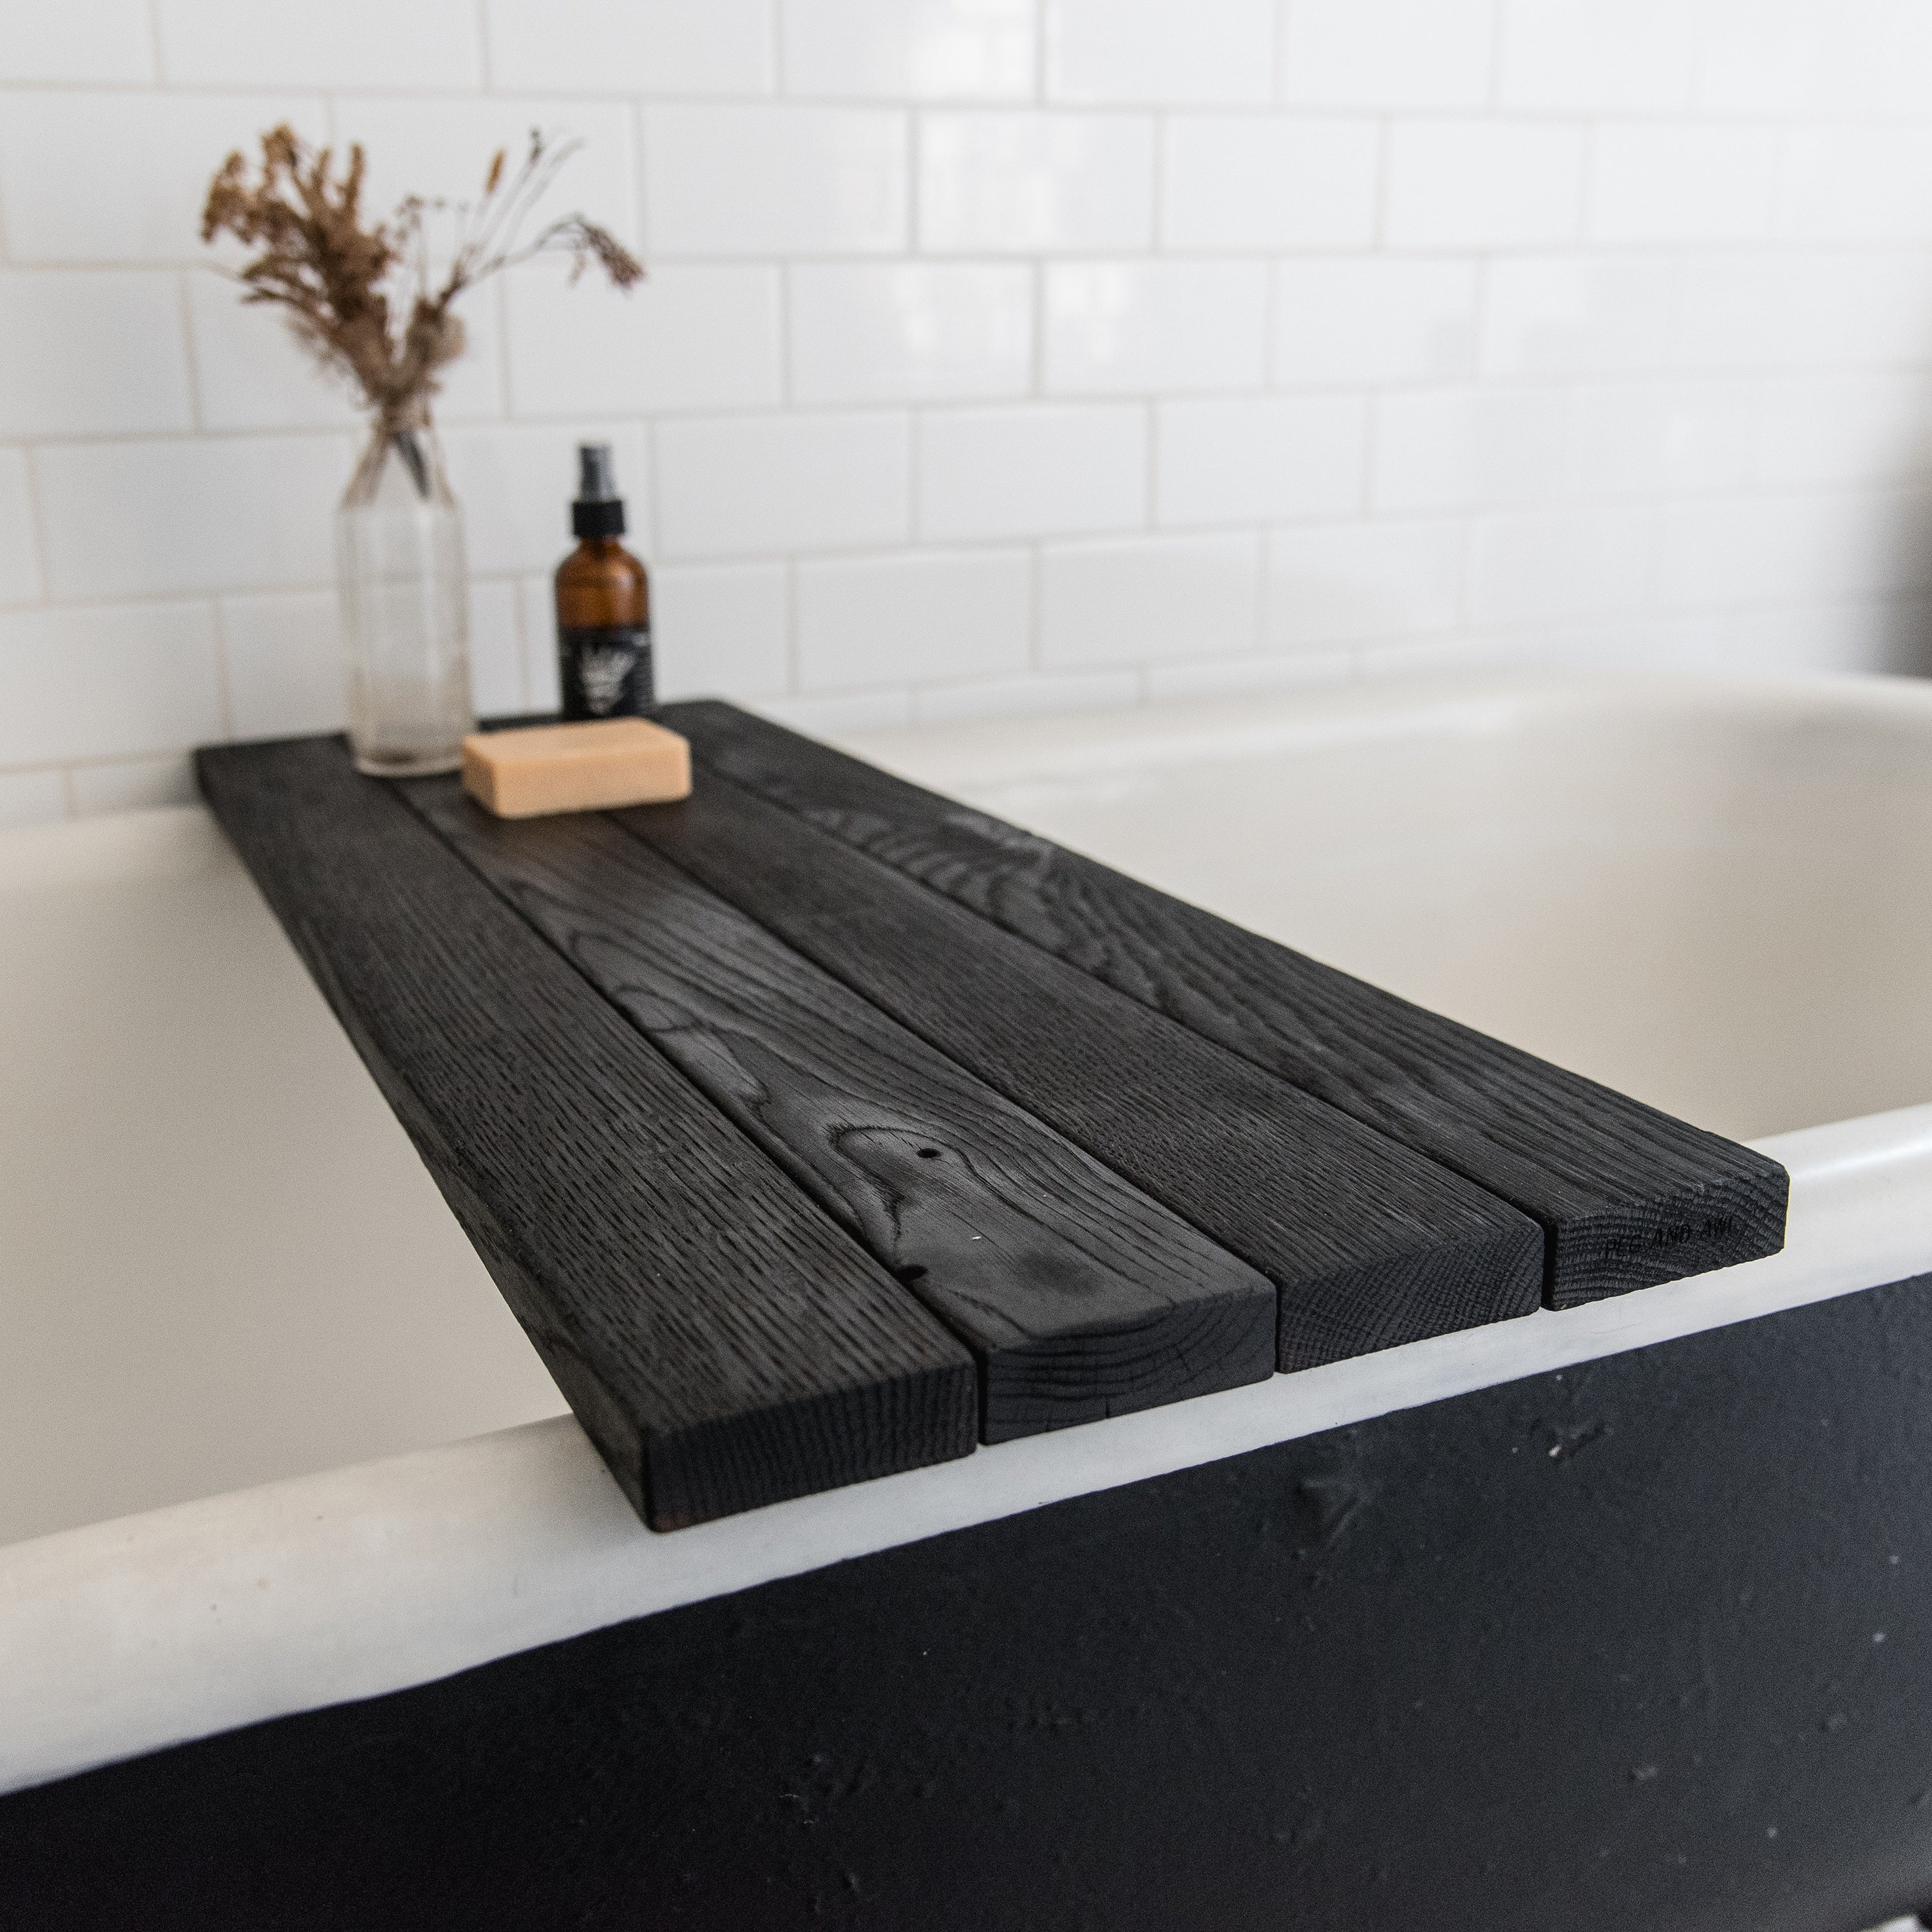 Pitch Black Bathtub Caddy  Reclaimed Wood Bath Tray – Peg and Awl